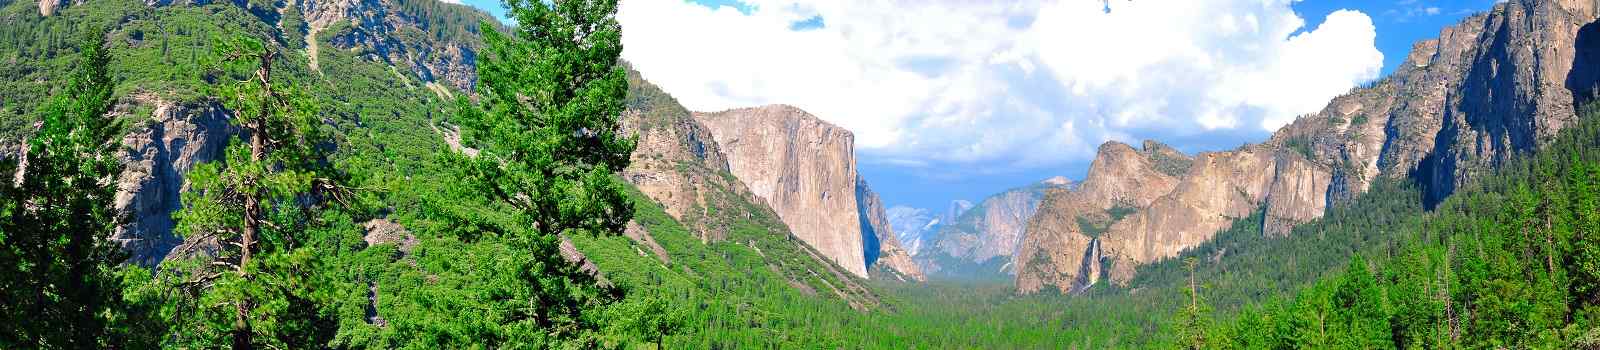 KIDS-GO-KALIFORNIEN  USA NP Yosemite NP Panorama 63127120